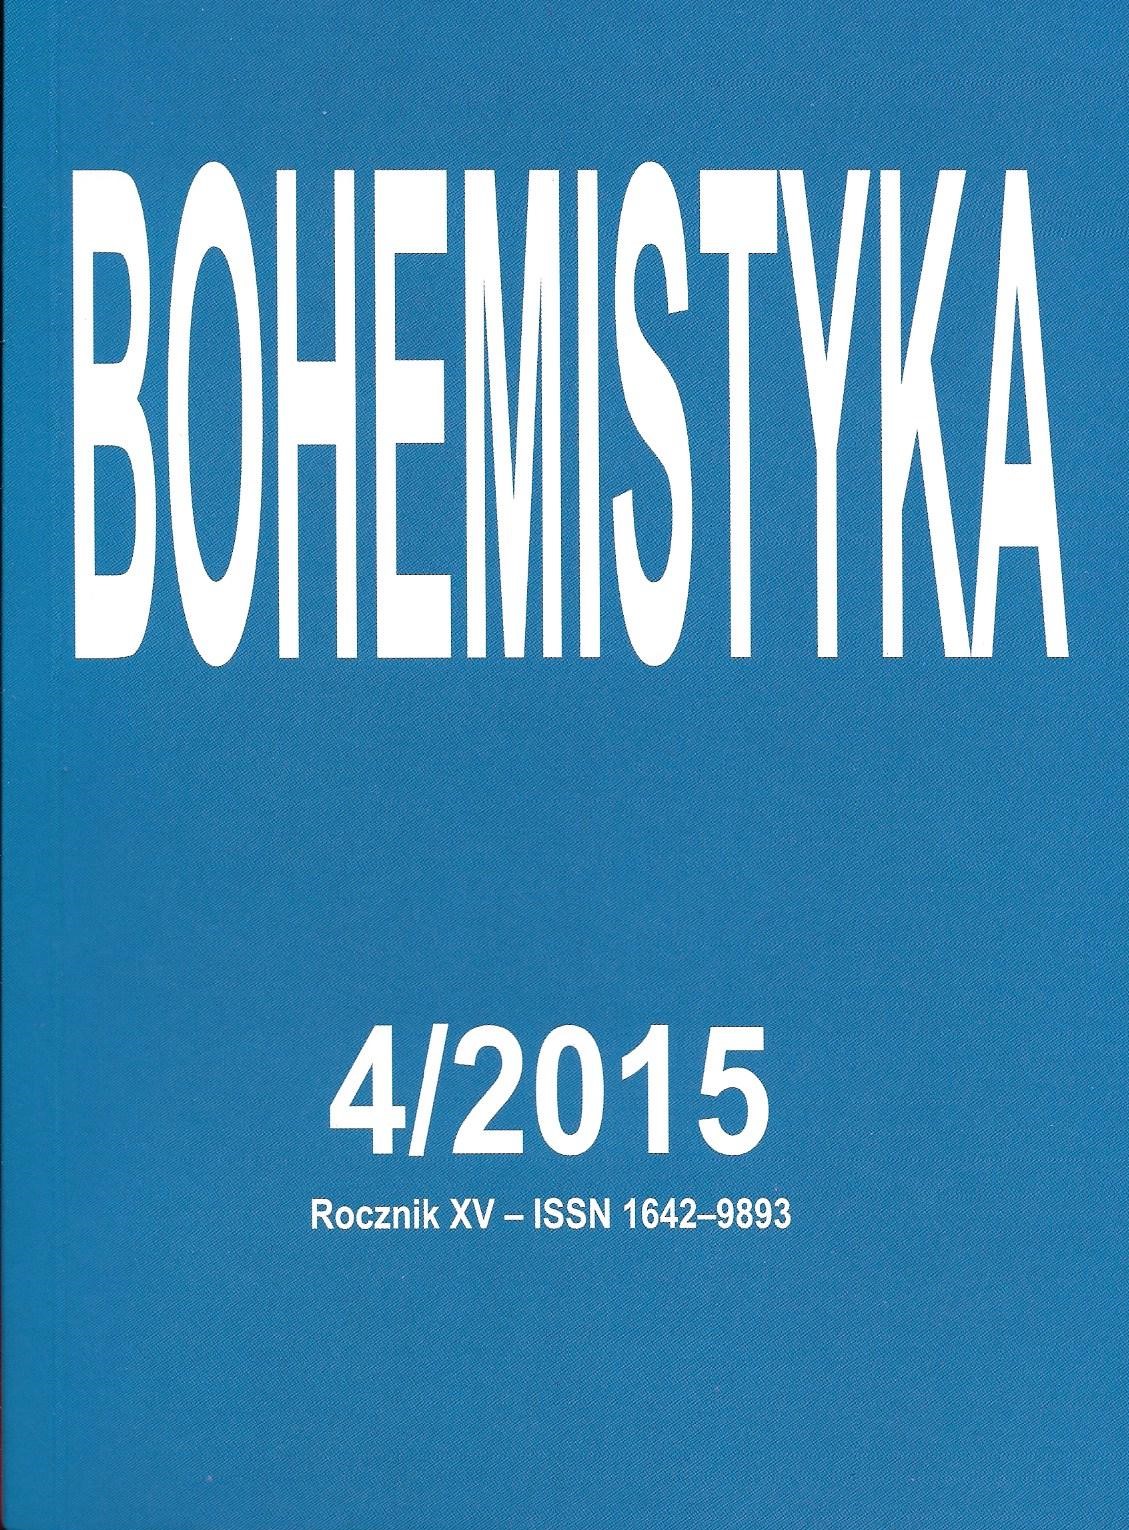 Ewa Siatkowska, Słowa. Monografie leksykalne, Wydawnictwo MM,Warszawa 2015, 252 s., ISBN 978-83-64616-00-6 Cover Image